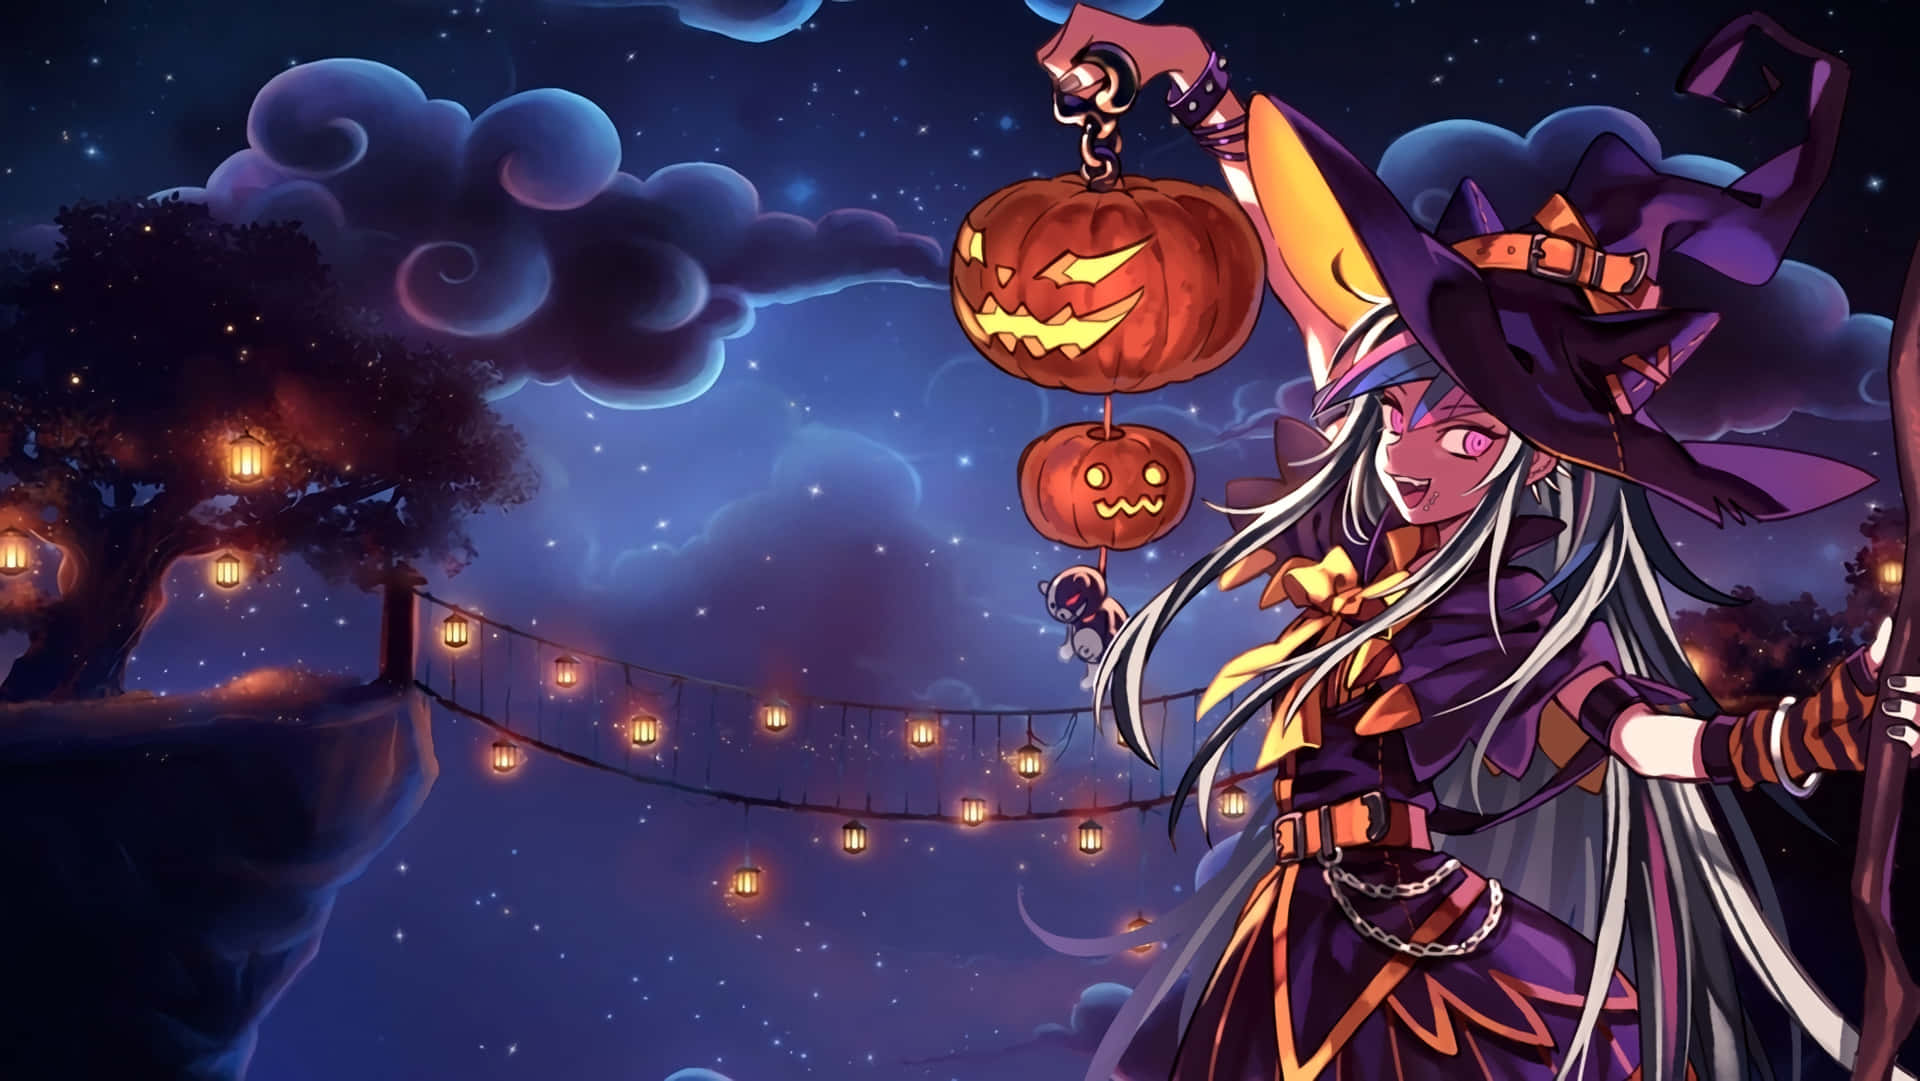 Spooky Anime Girl for Halloween Wallpaper